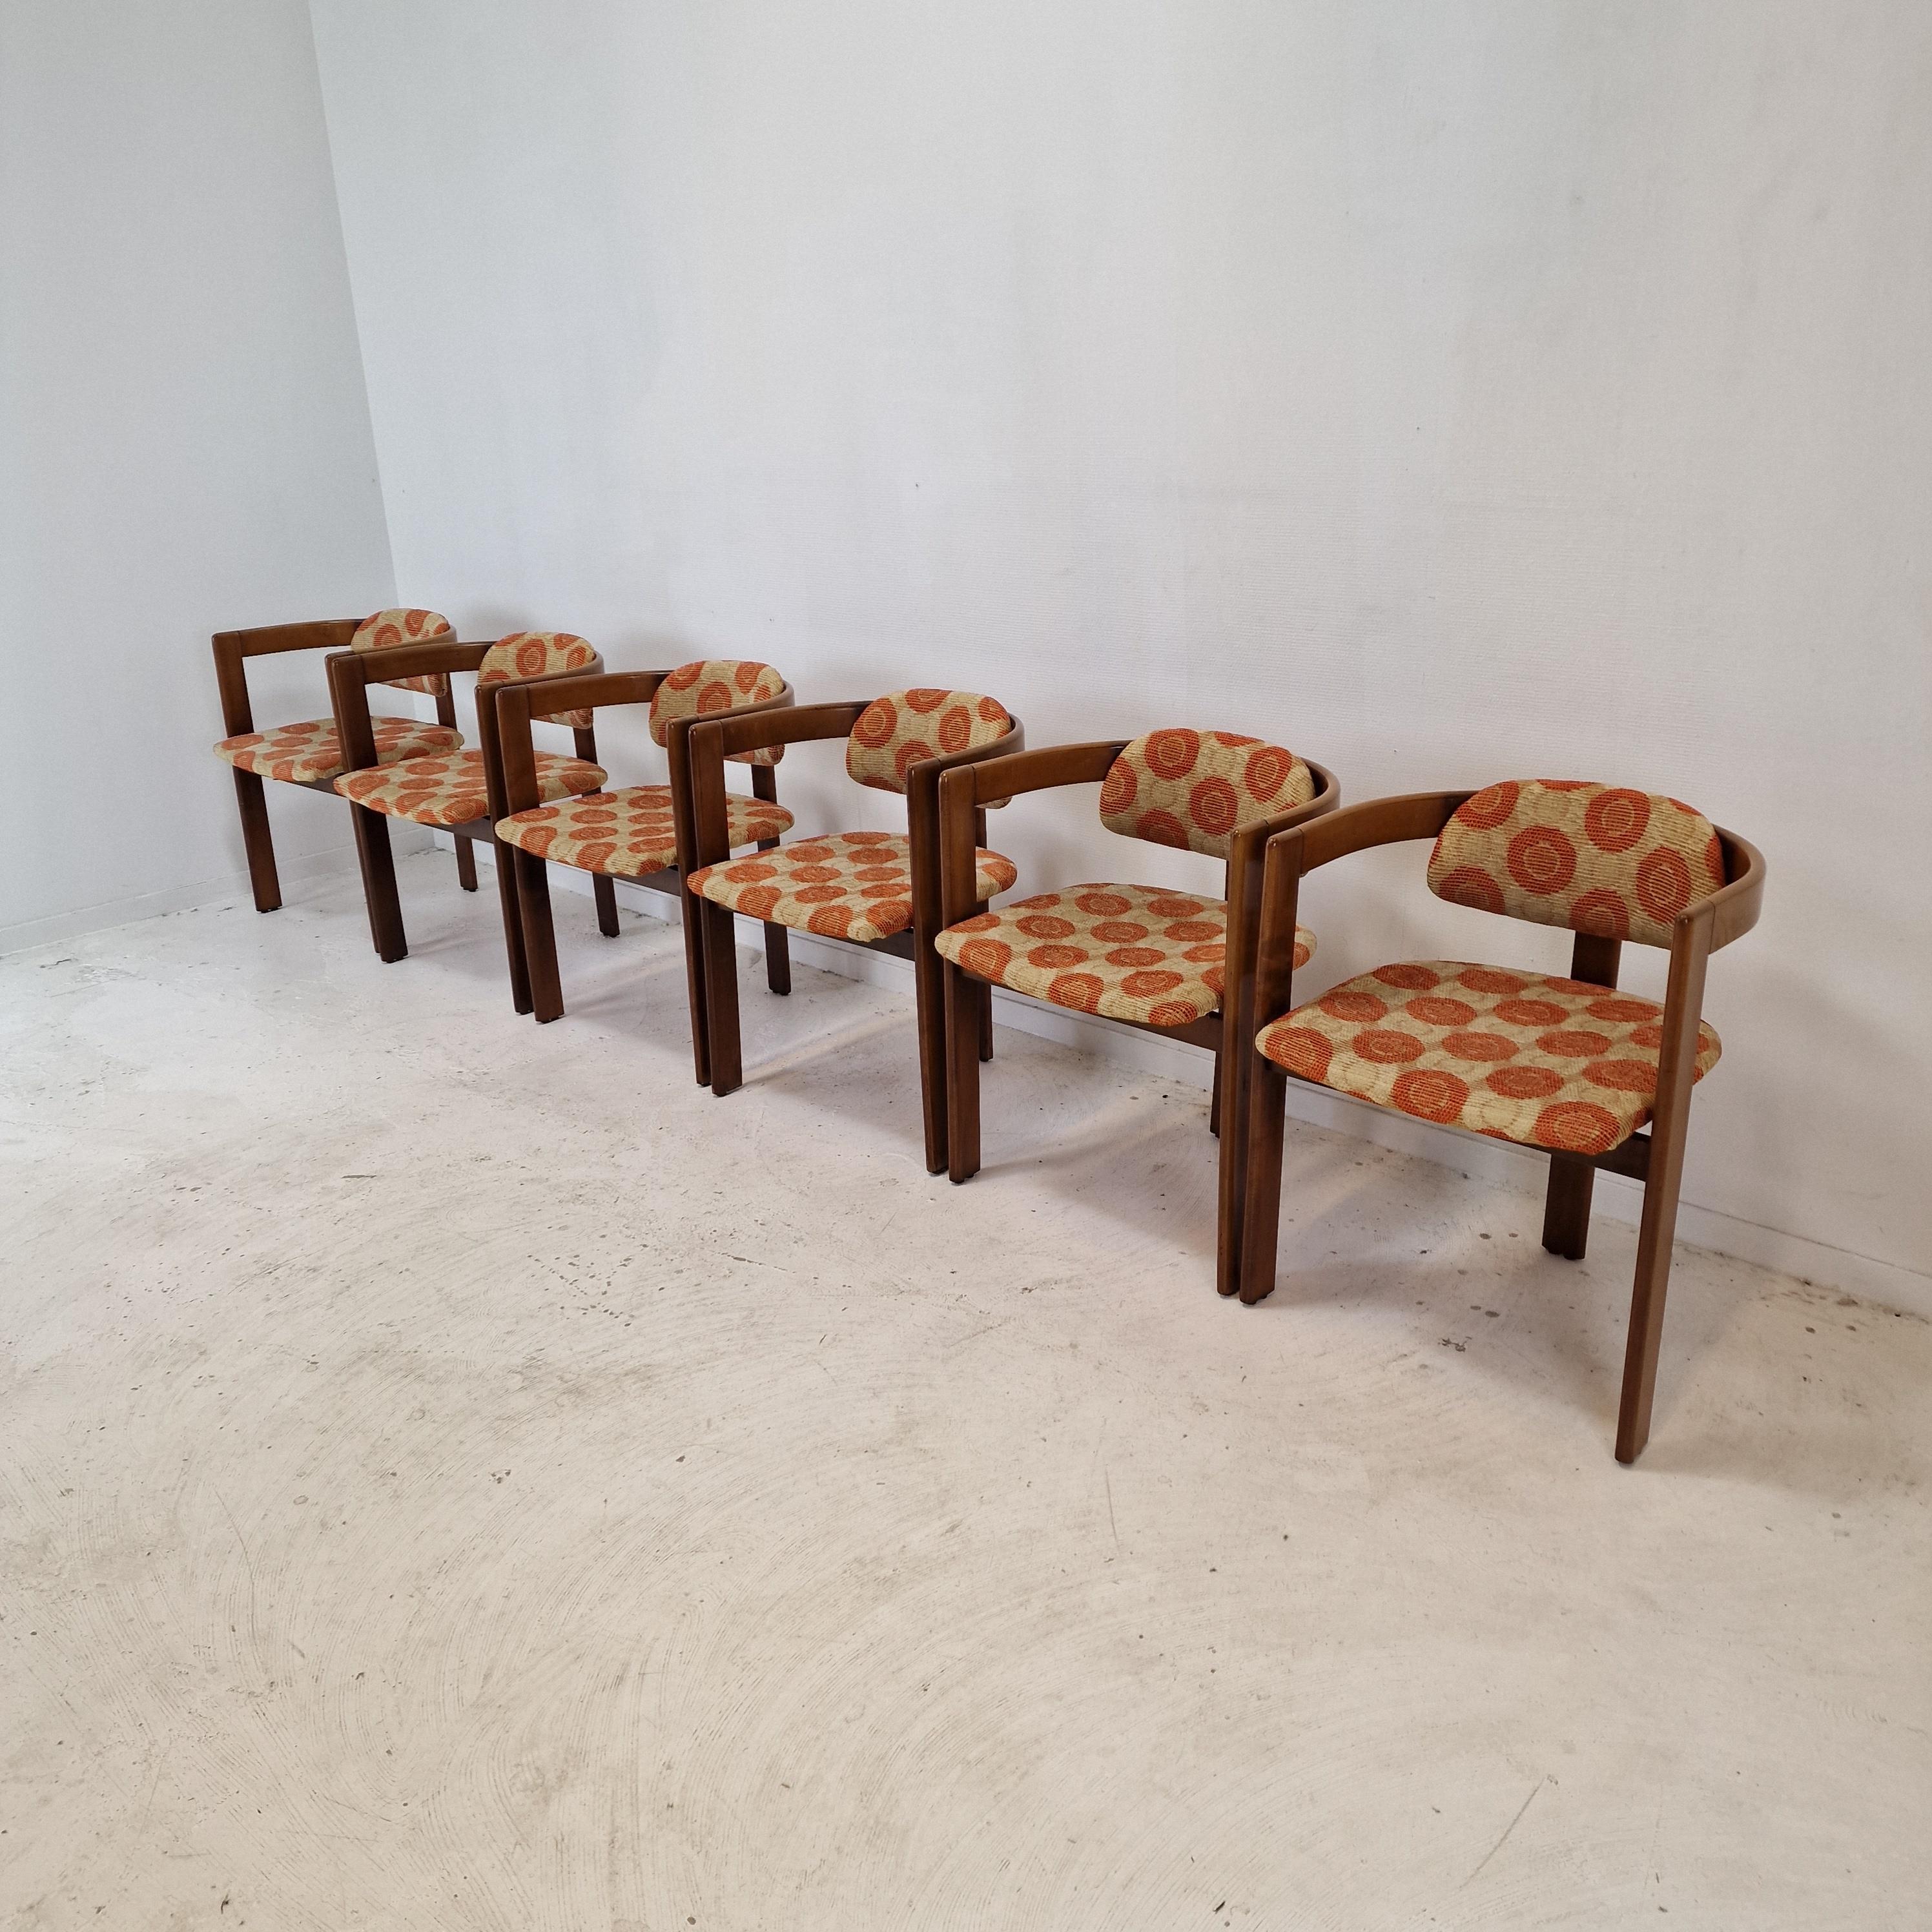 Atemberaubender Satz von 6 schönen italienischen Stühlen.

Dieses schöne Set von Esszimmerstühlen hat starke Ähnlichkeit mit dem Stuhl 